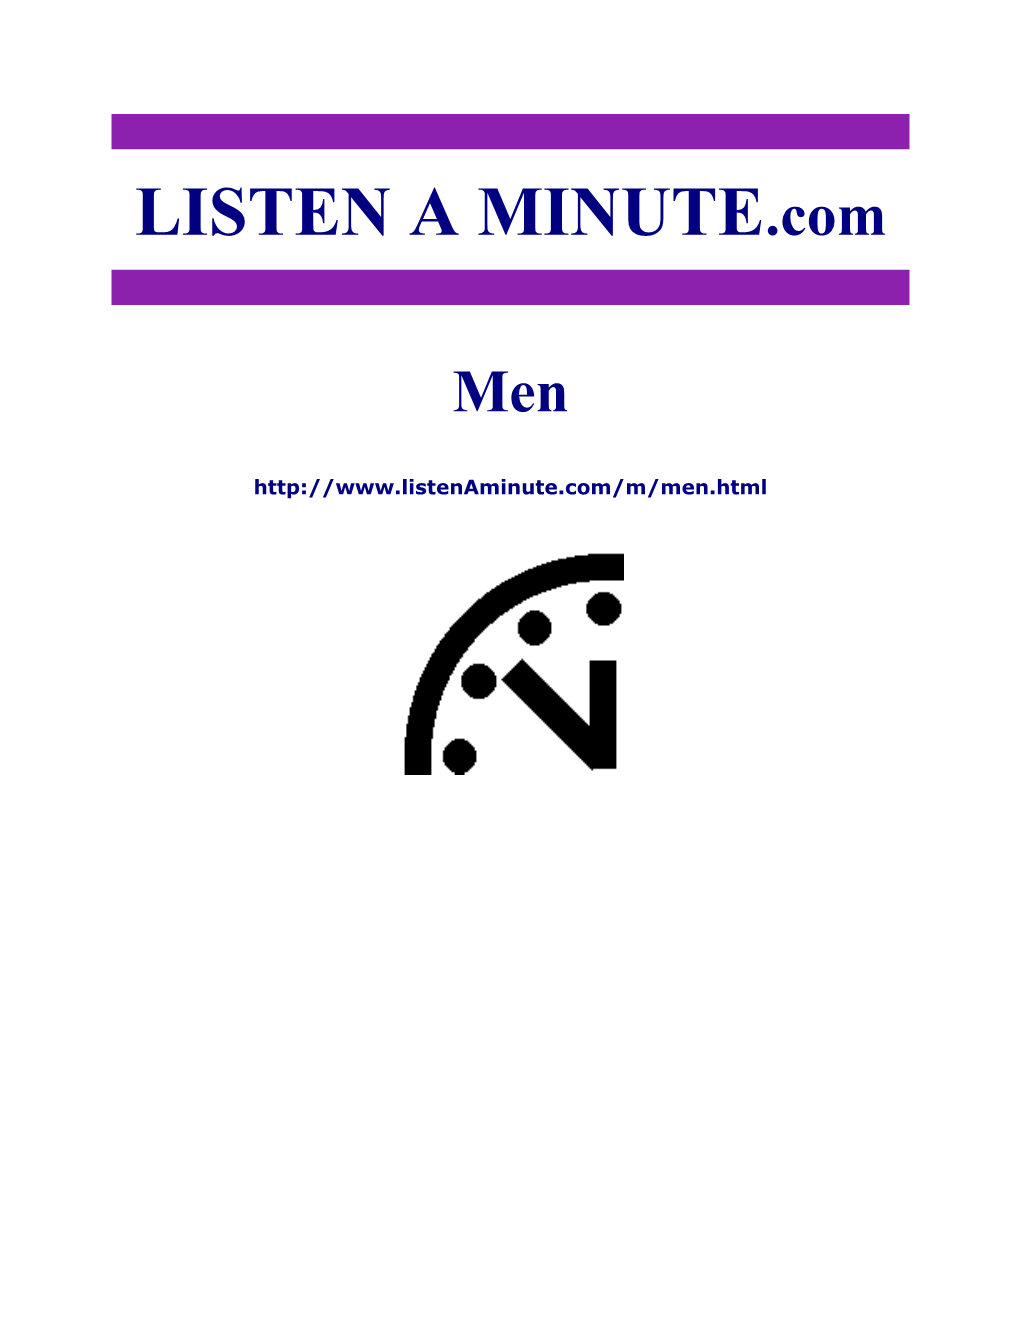 Listen a Minute.Com - ESL Listening - Men